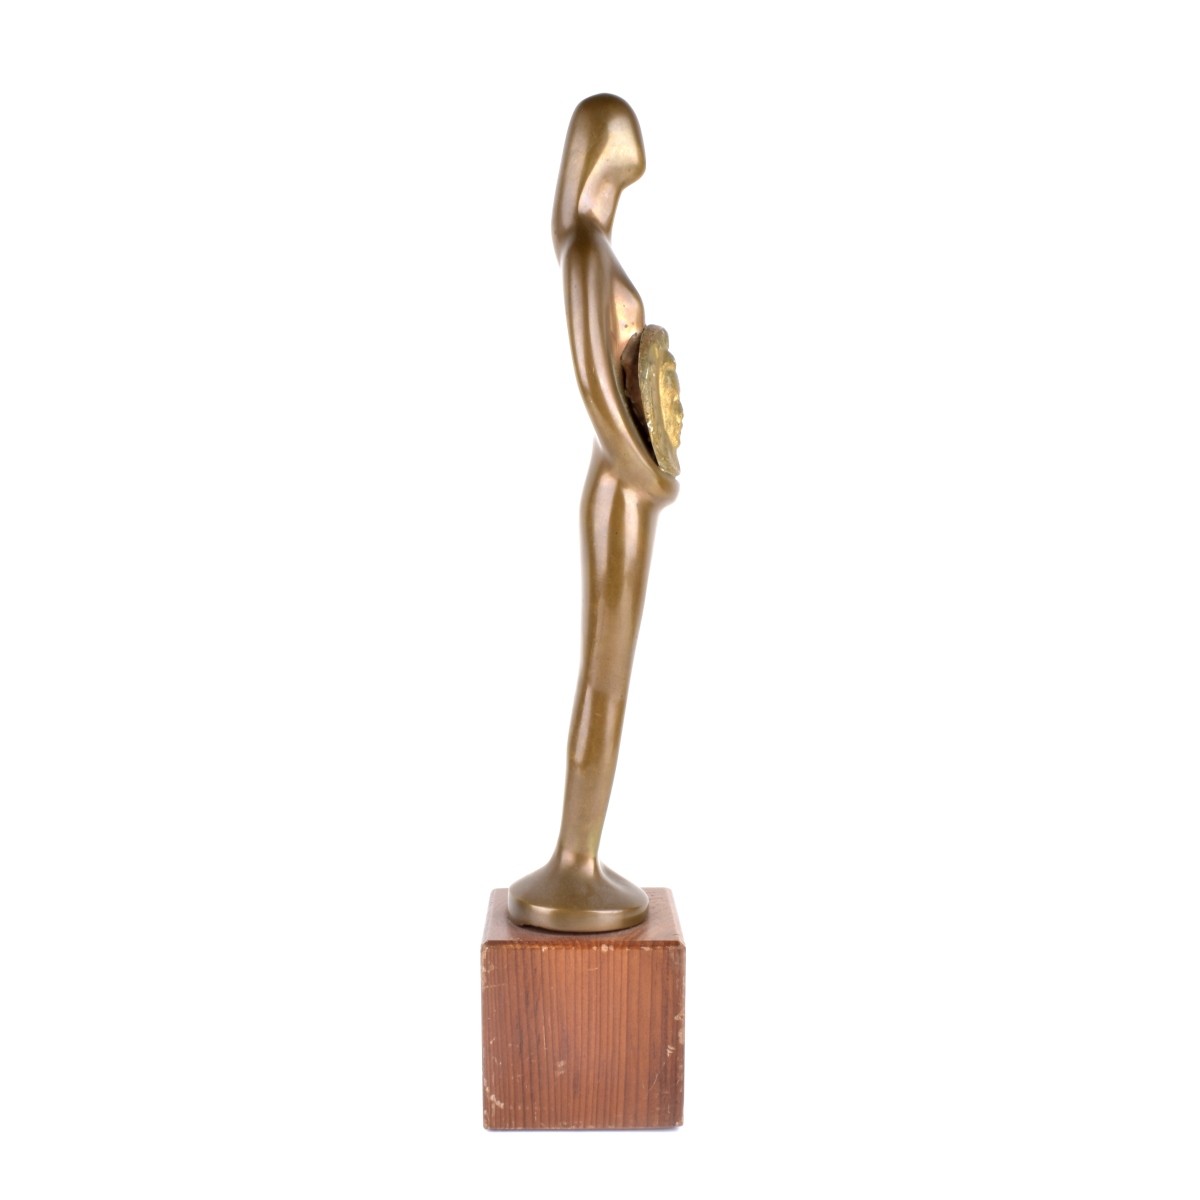 Vintage Bronze Miami Latin Music Award